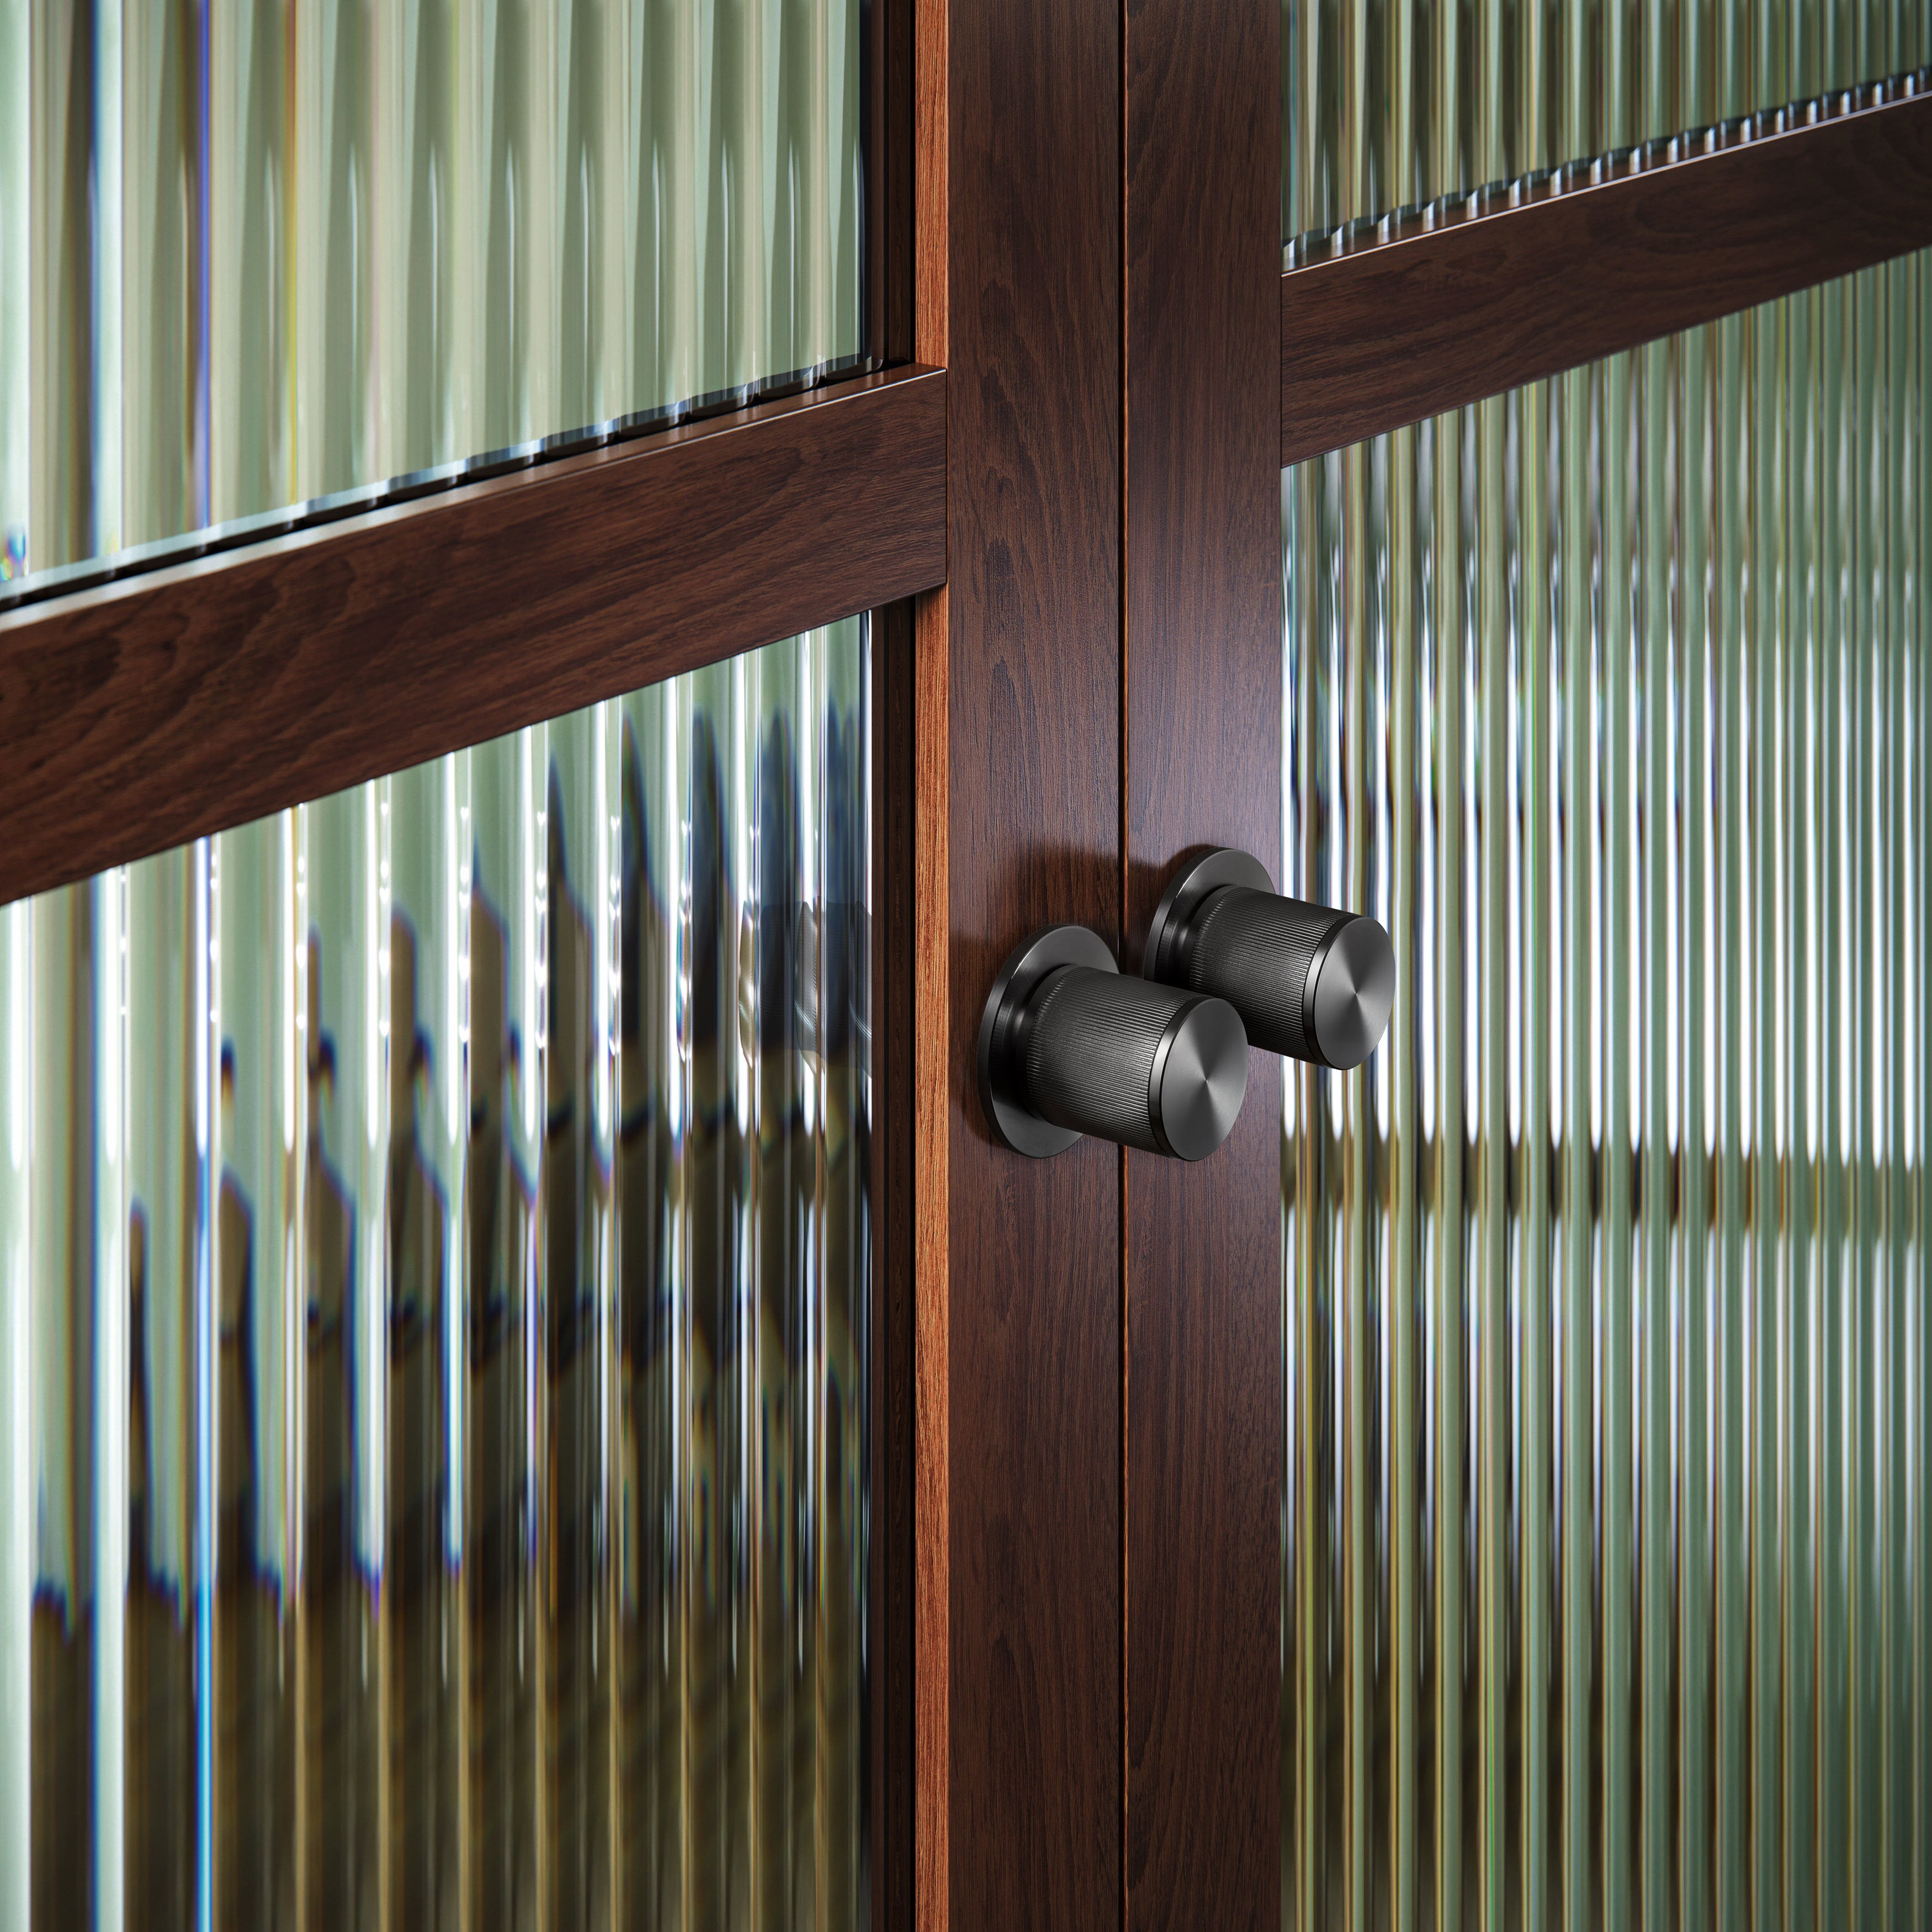 Eksklusiv dørknop i gun metal med linjeret mønster. Her ses to dørknopper monteret på en trædør med glasruder.